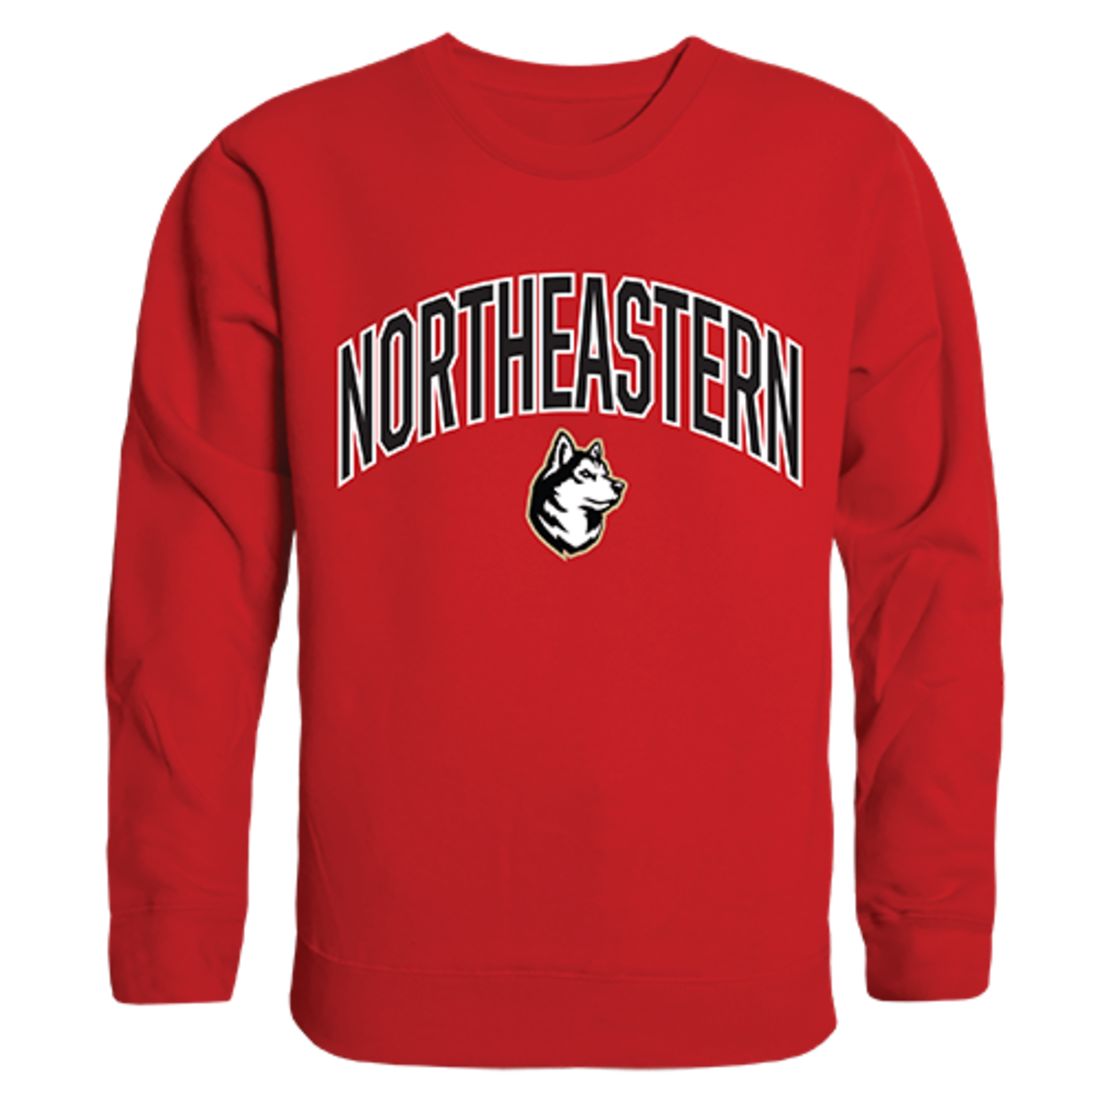 Northeastern University Campus Crewneck Pullover Sweatshirt Sweater Red-Campus-Wardrobe